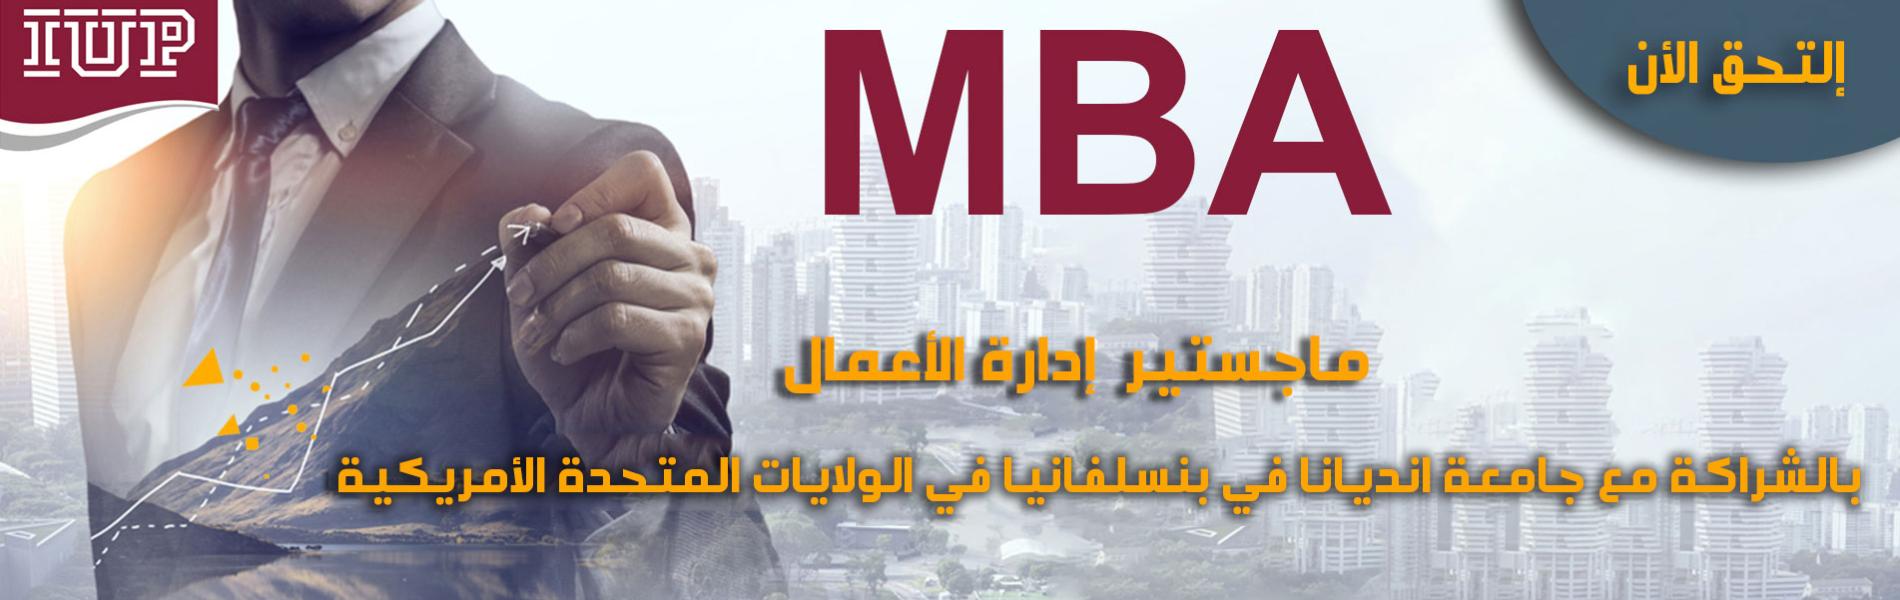  الإعلان عن بدء قبول طلبات الالتحاق في برنامج ماجستير إدارة الاعمال MBA المشترك مع جامعة انديانا في 